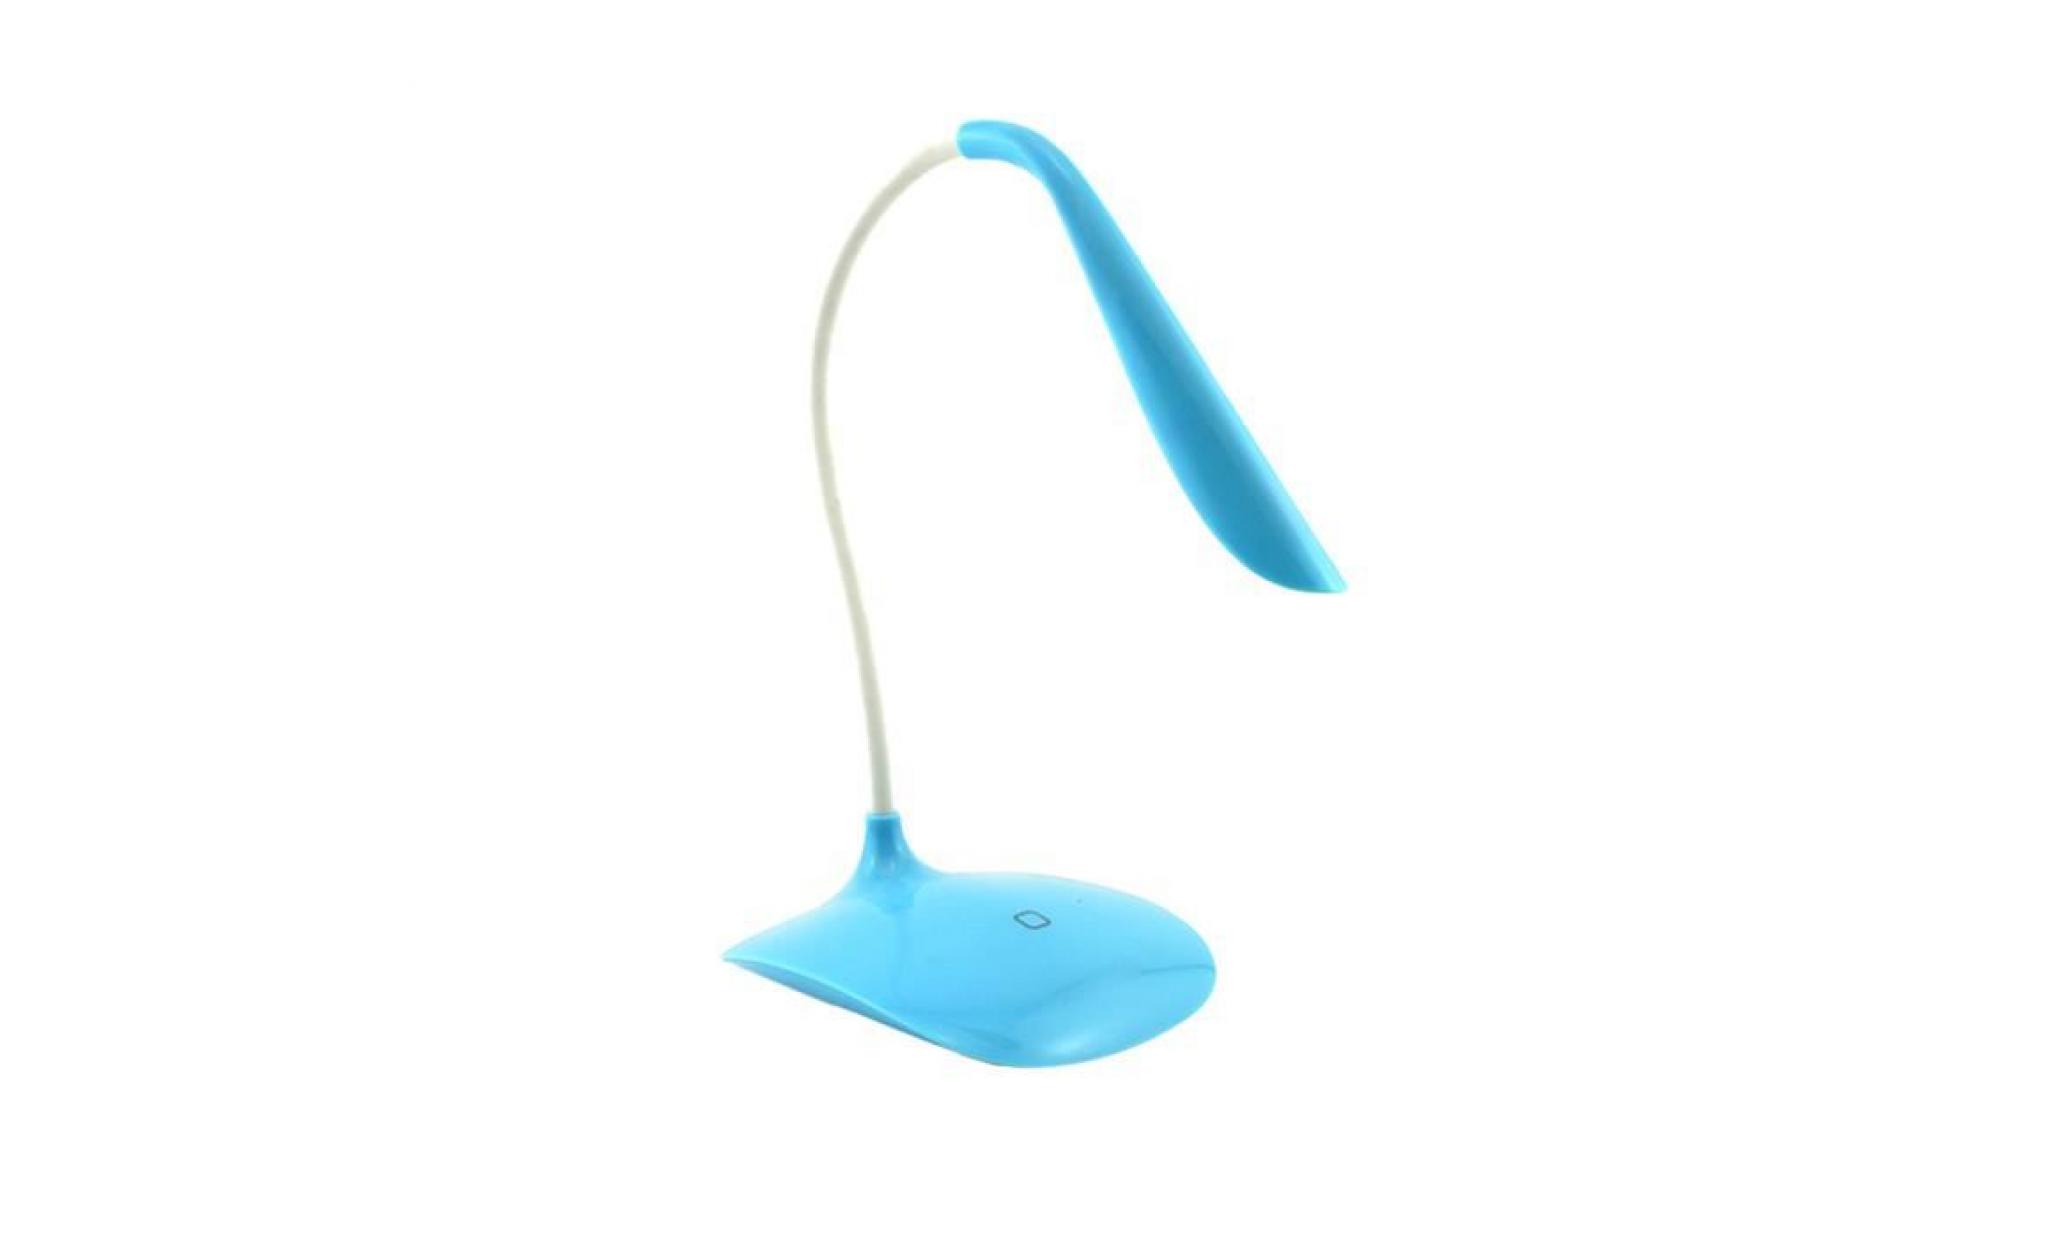 réglable de toucher du capteur usb rechargeable lampe de bureau led lampe de travail de lecture bleu ciel@am1x193 skyblue_999